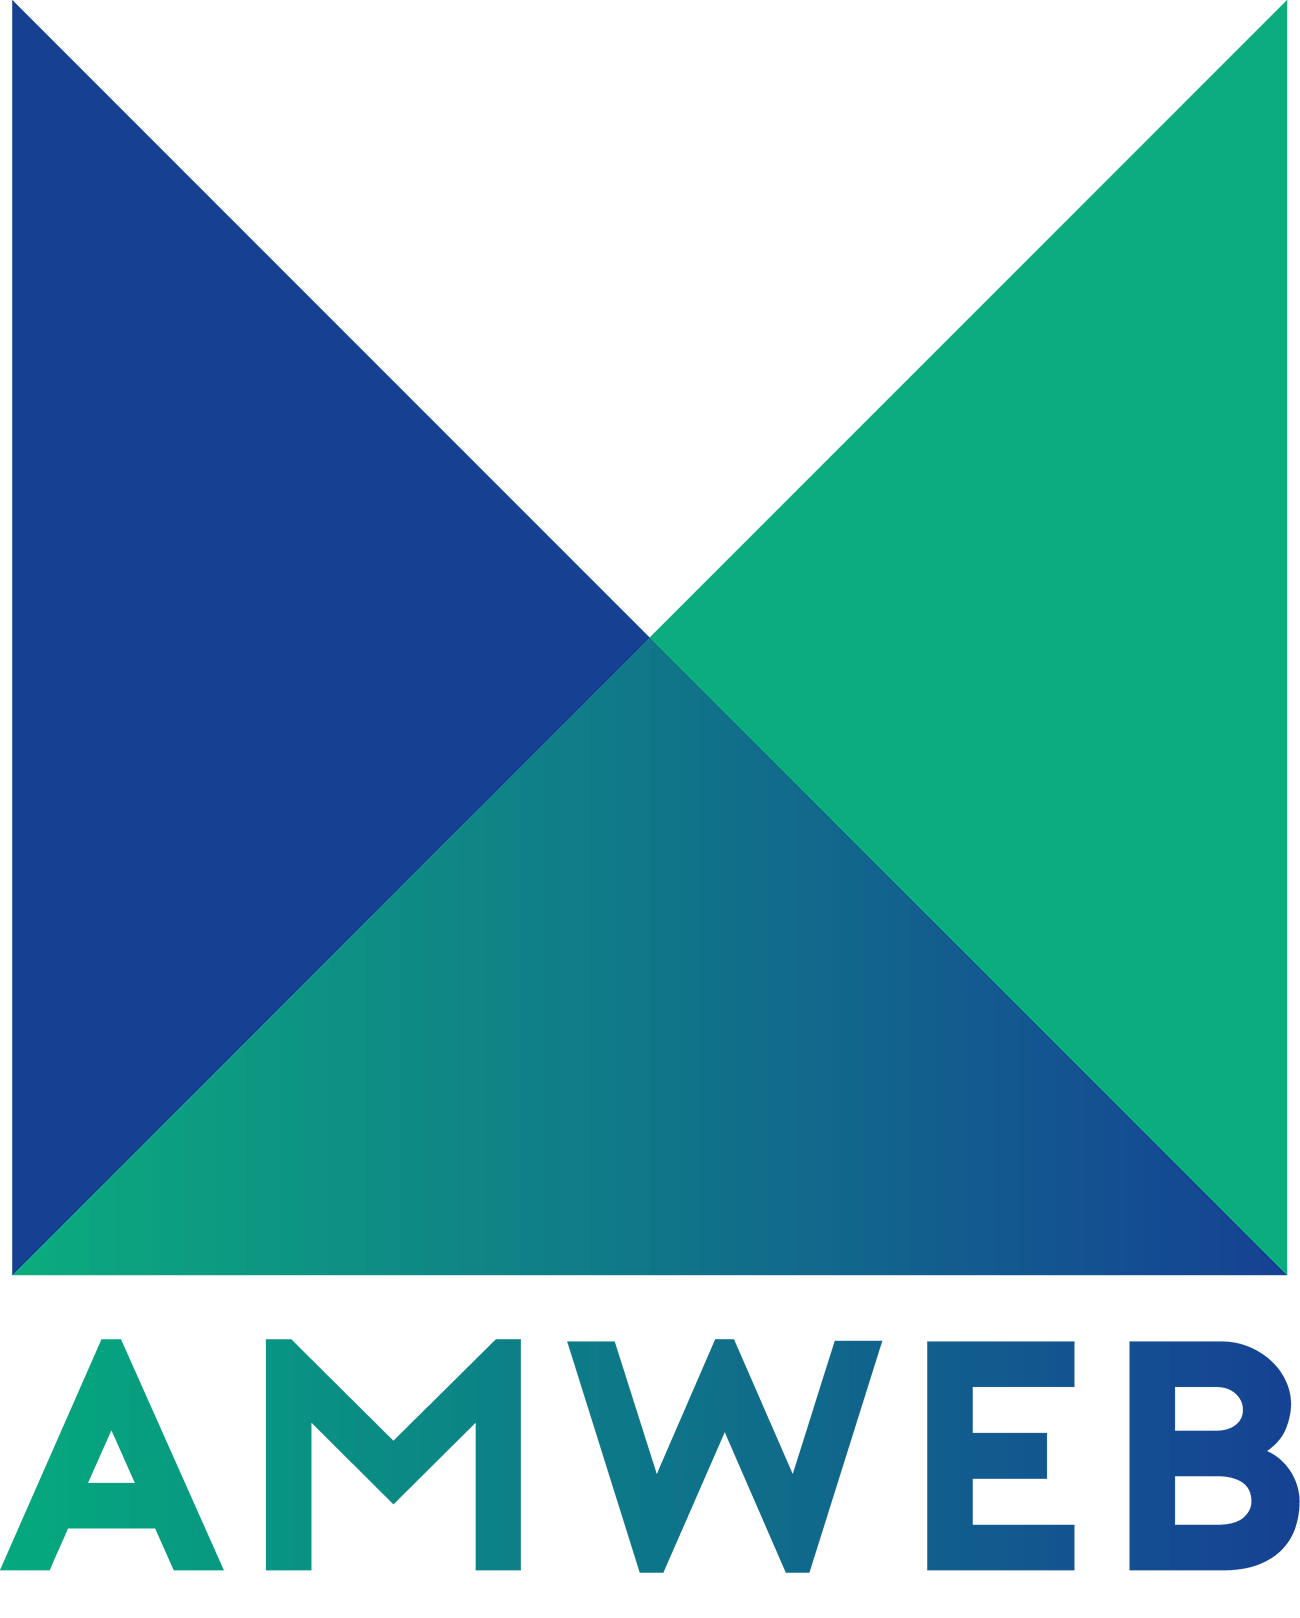 AMWeb logo